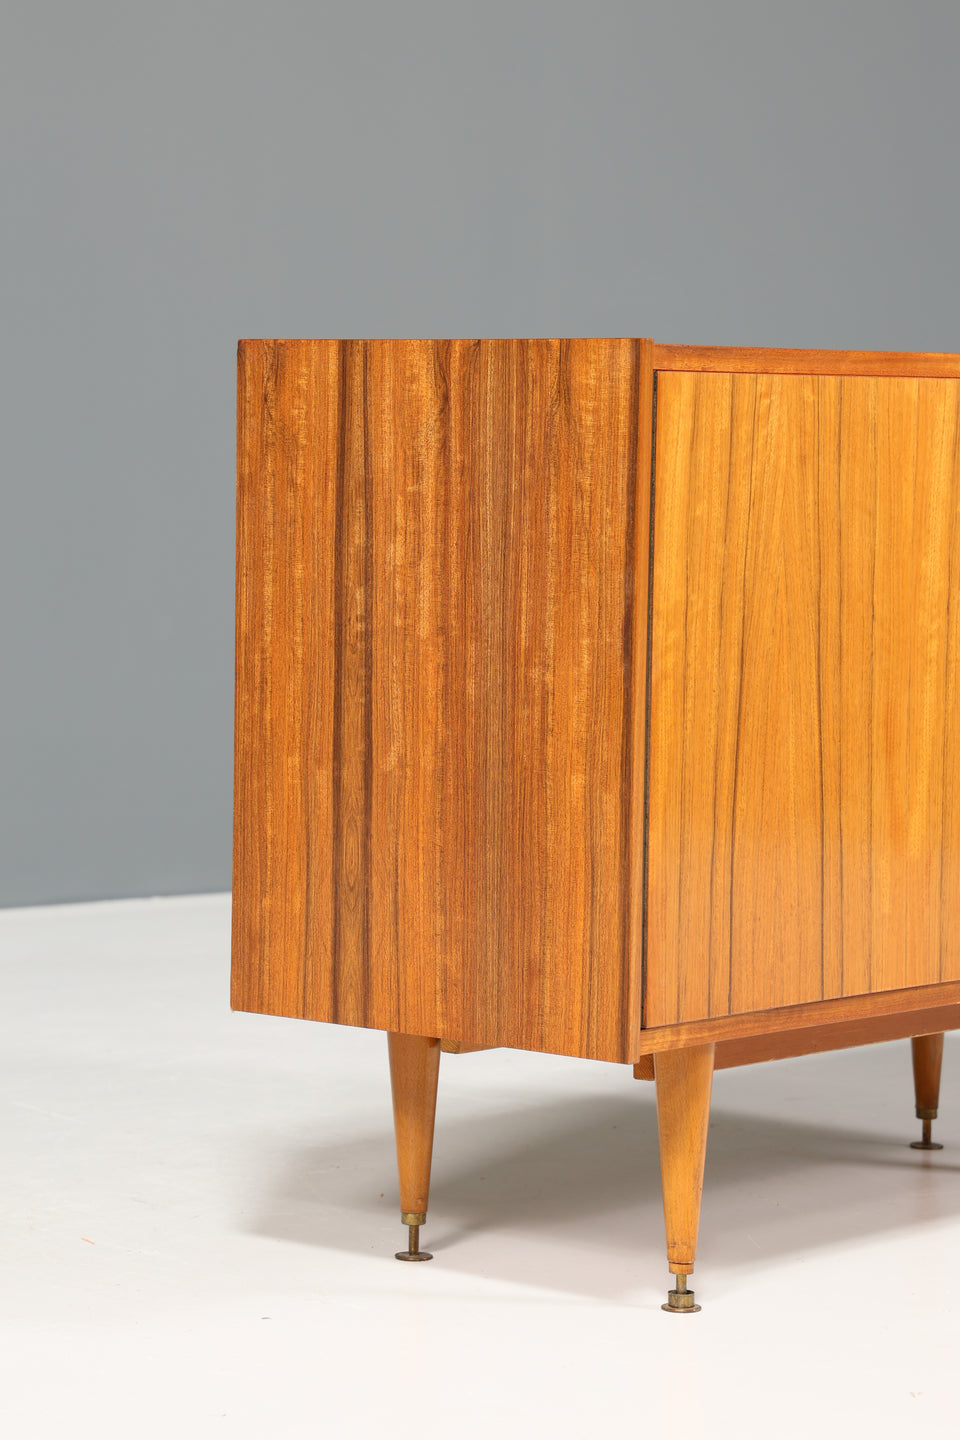 Wunderschöne Mid Century Kommode Vintage Holz Sideboard Retro Schrank 60er Jahre